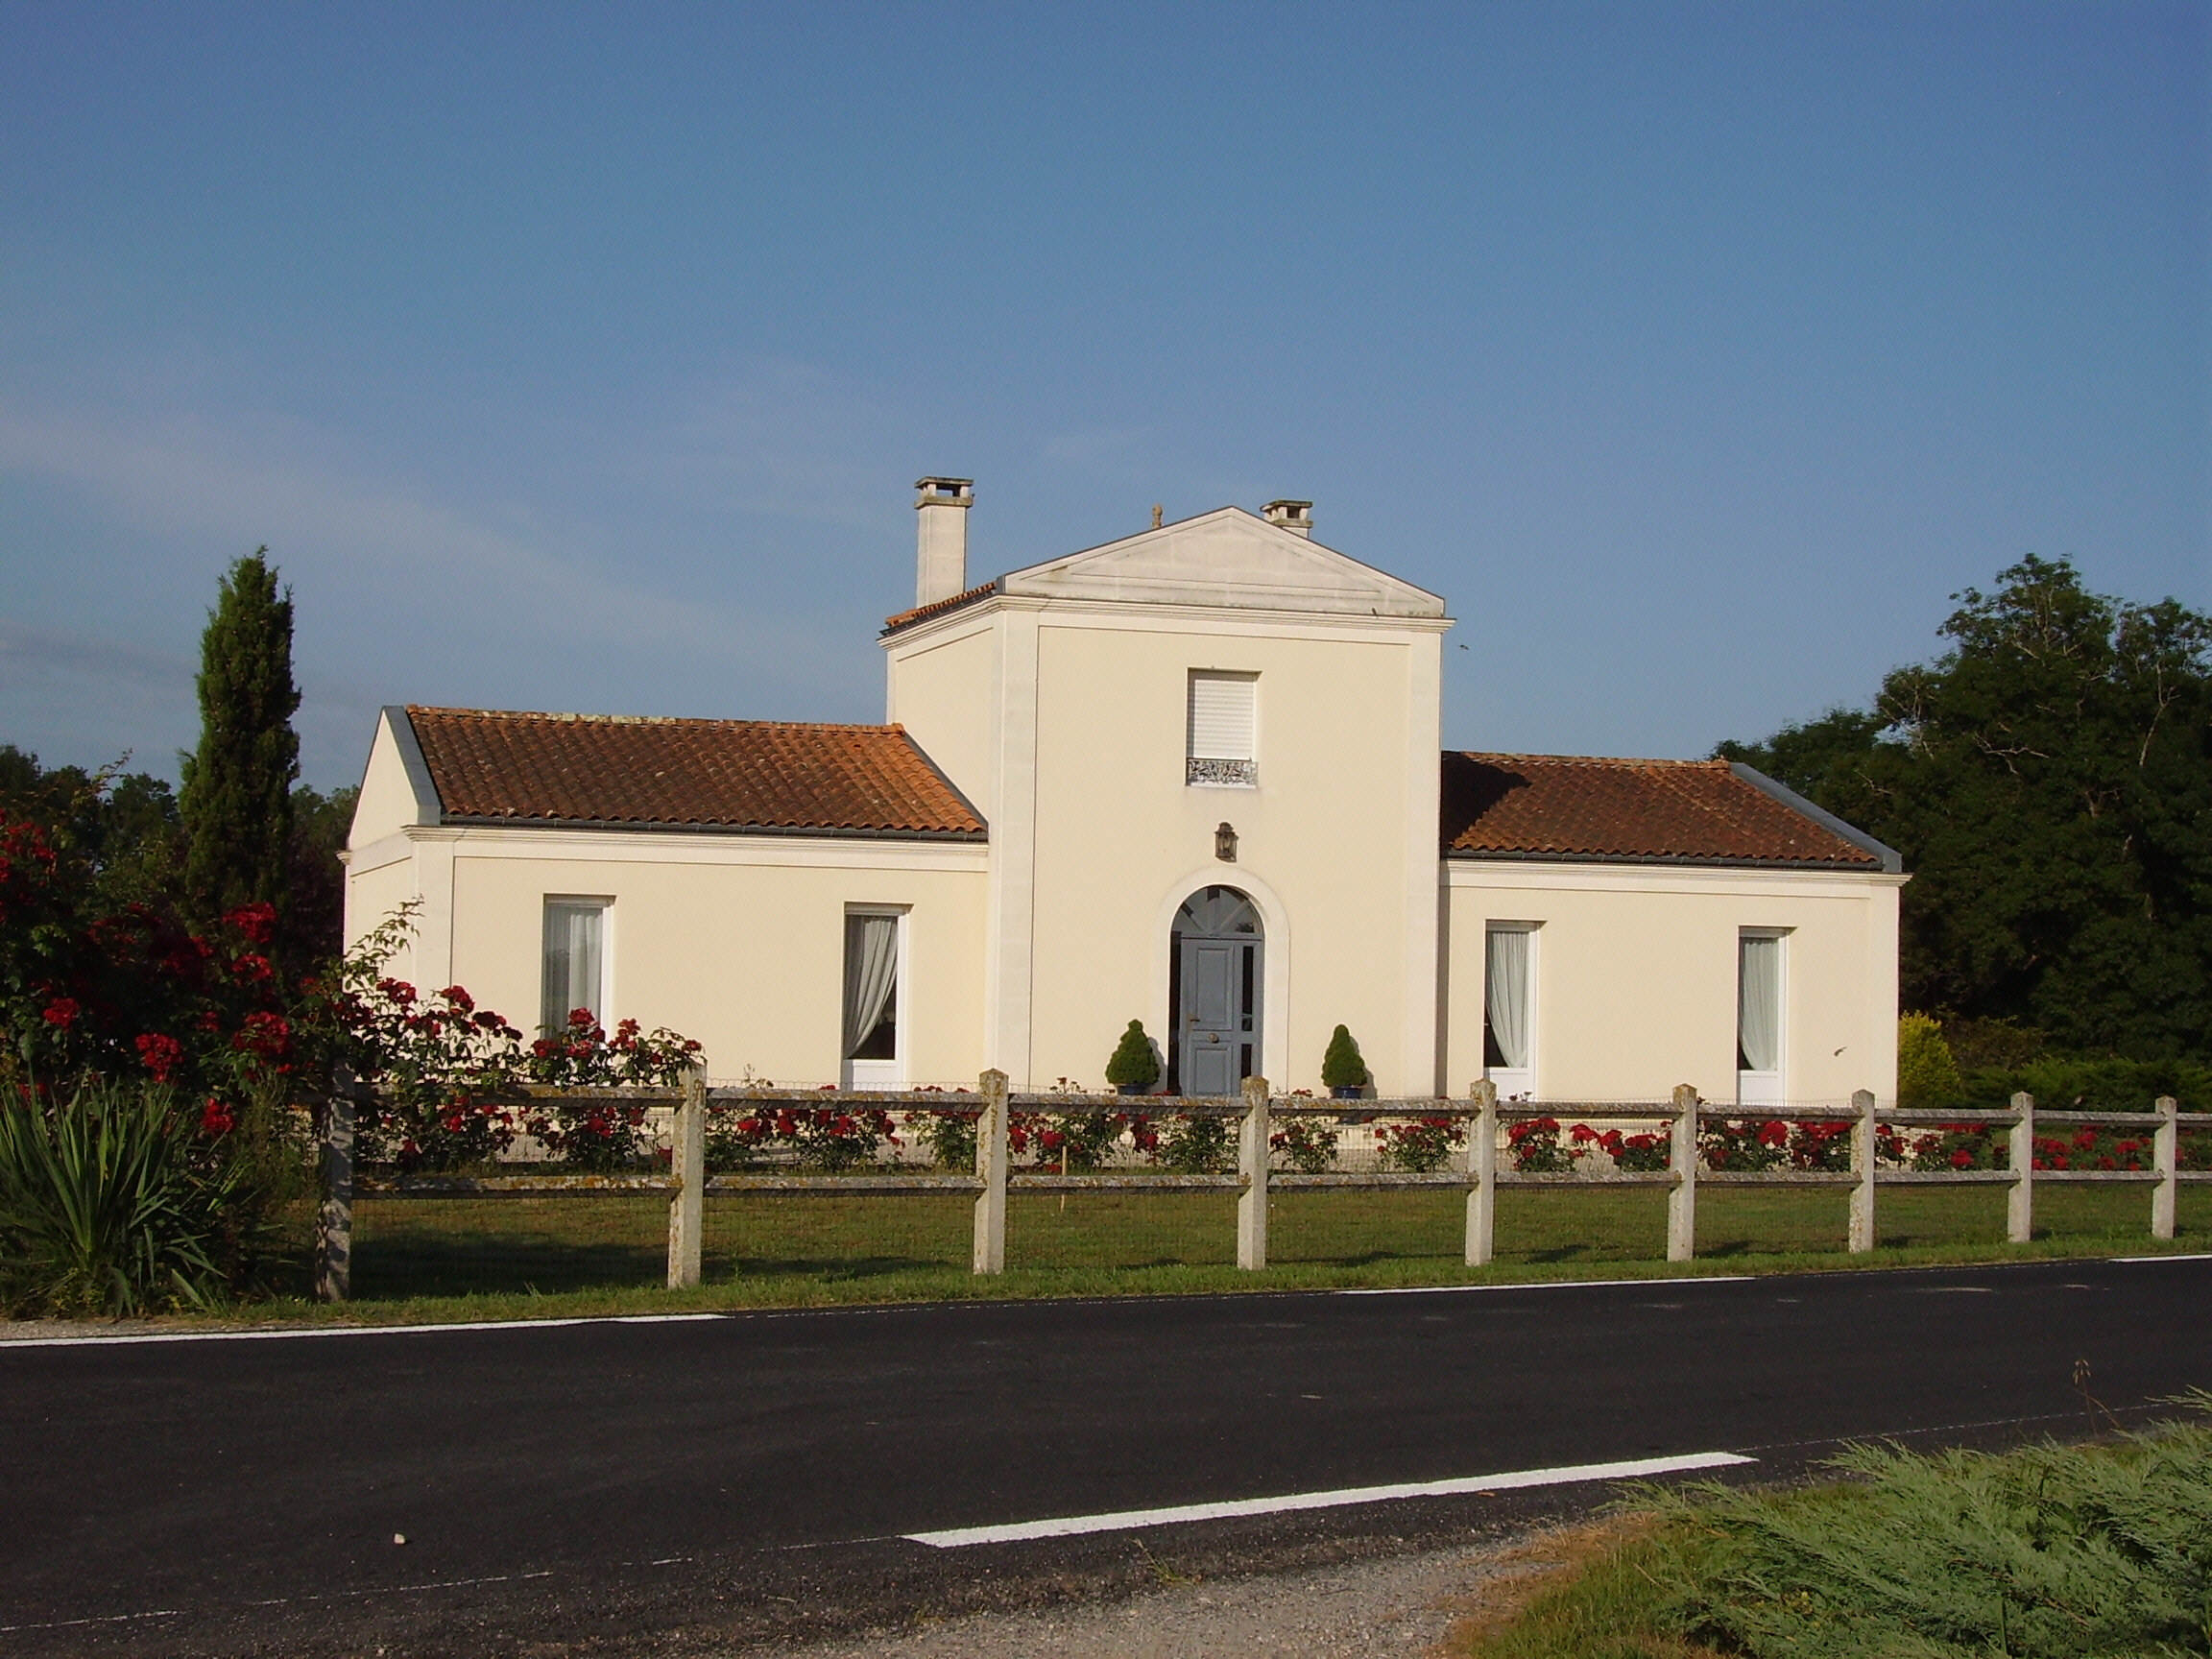 Château Argenteyre (l') AOC Médoc Rouge 2014